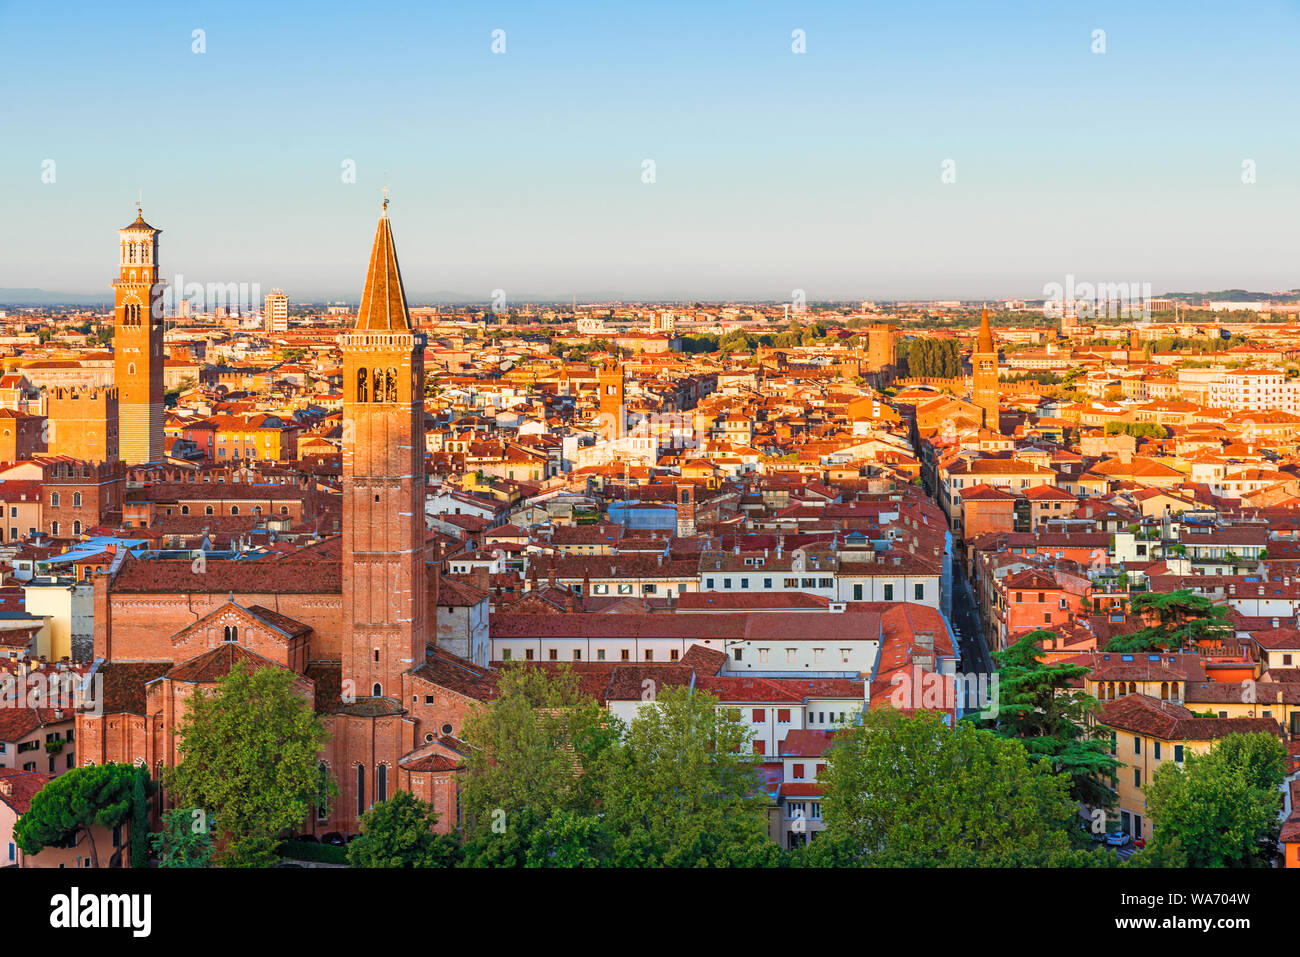 Bellissima vista di Verona a sunrise. Città vecchia di Santa Anastasia Chiesa e Torre dei Lamberti o Torre dei Lamberti. L'Italia, Europa Foto Stock